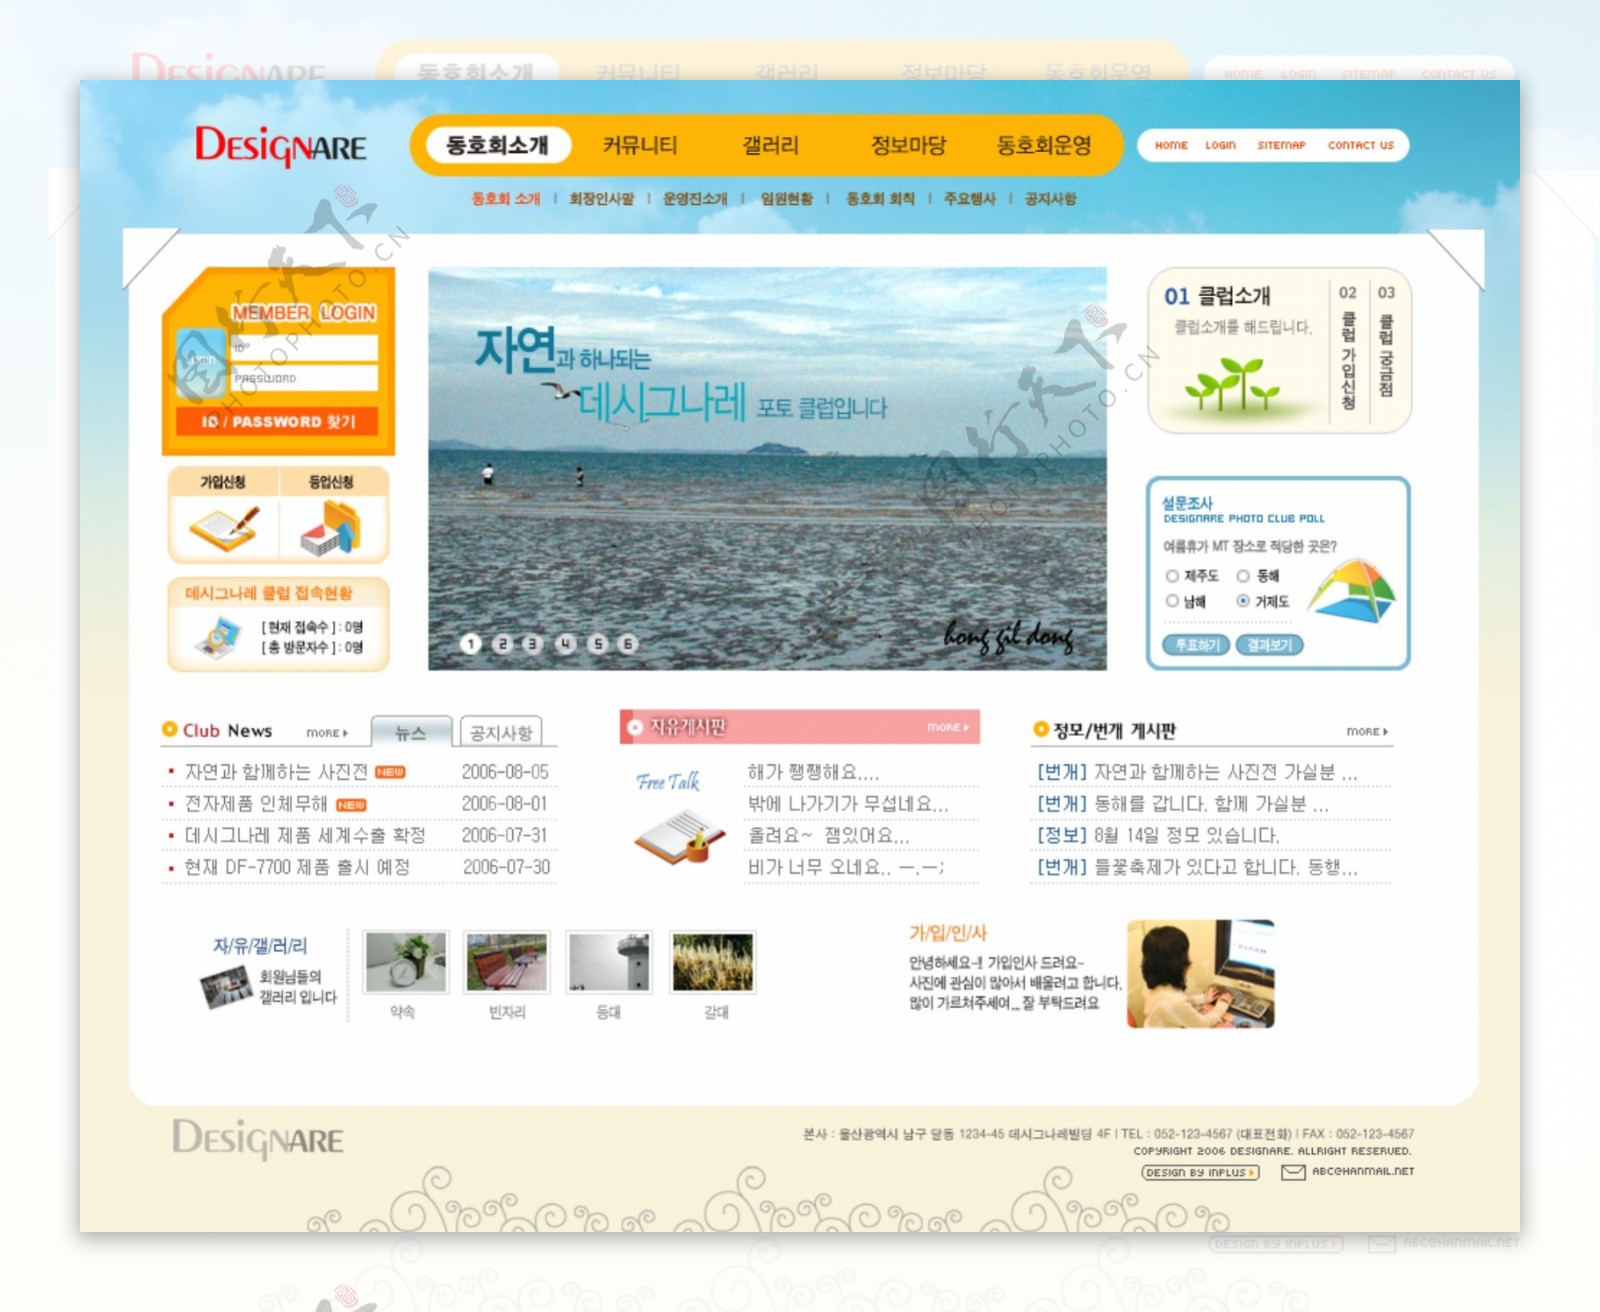 旅游公司会员服务网页模板